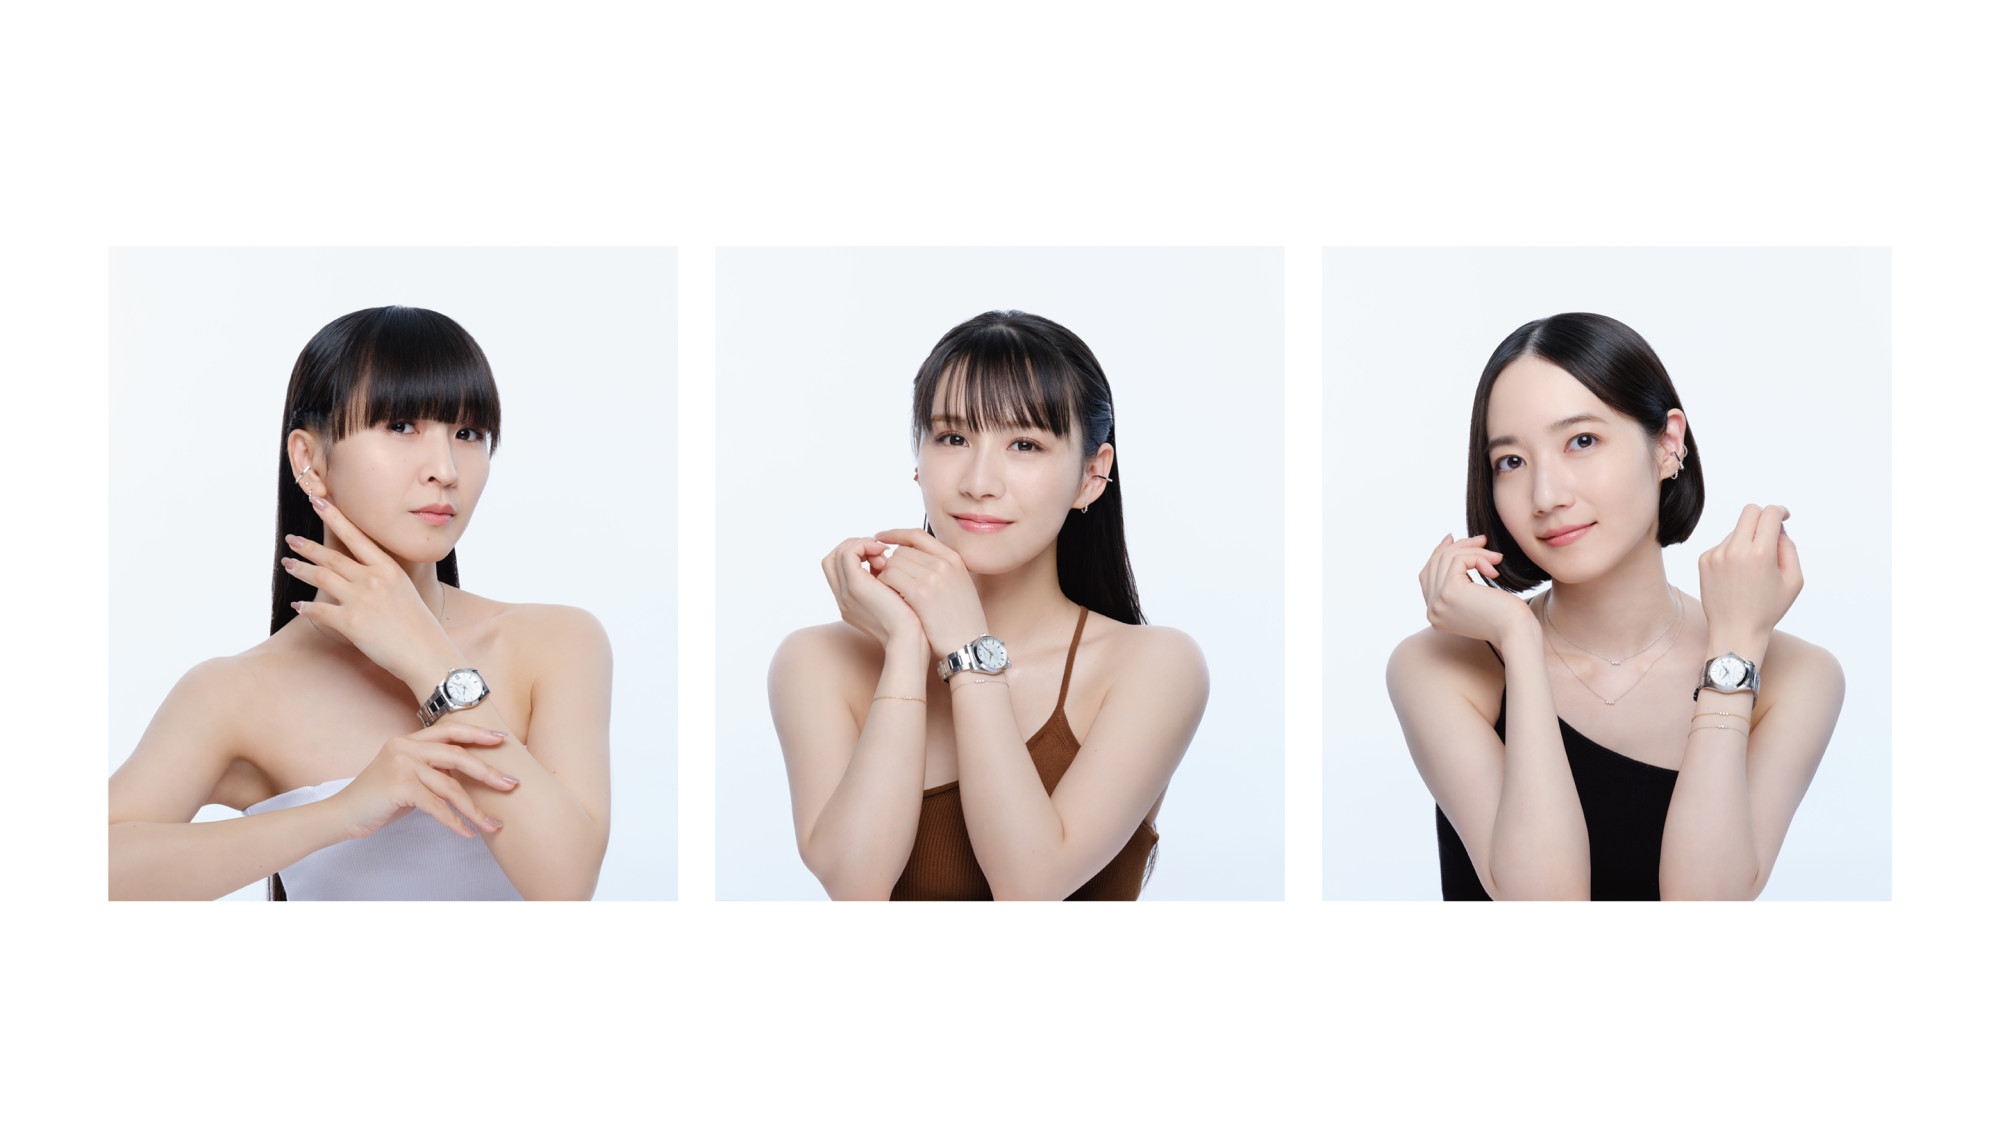 「Perfume Closet」5周年記念
思い出の時を刻む腕時計の発売決定!
期間限定の東京凱旋ポップアップショップの詳細も明らかに!